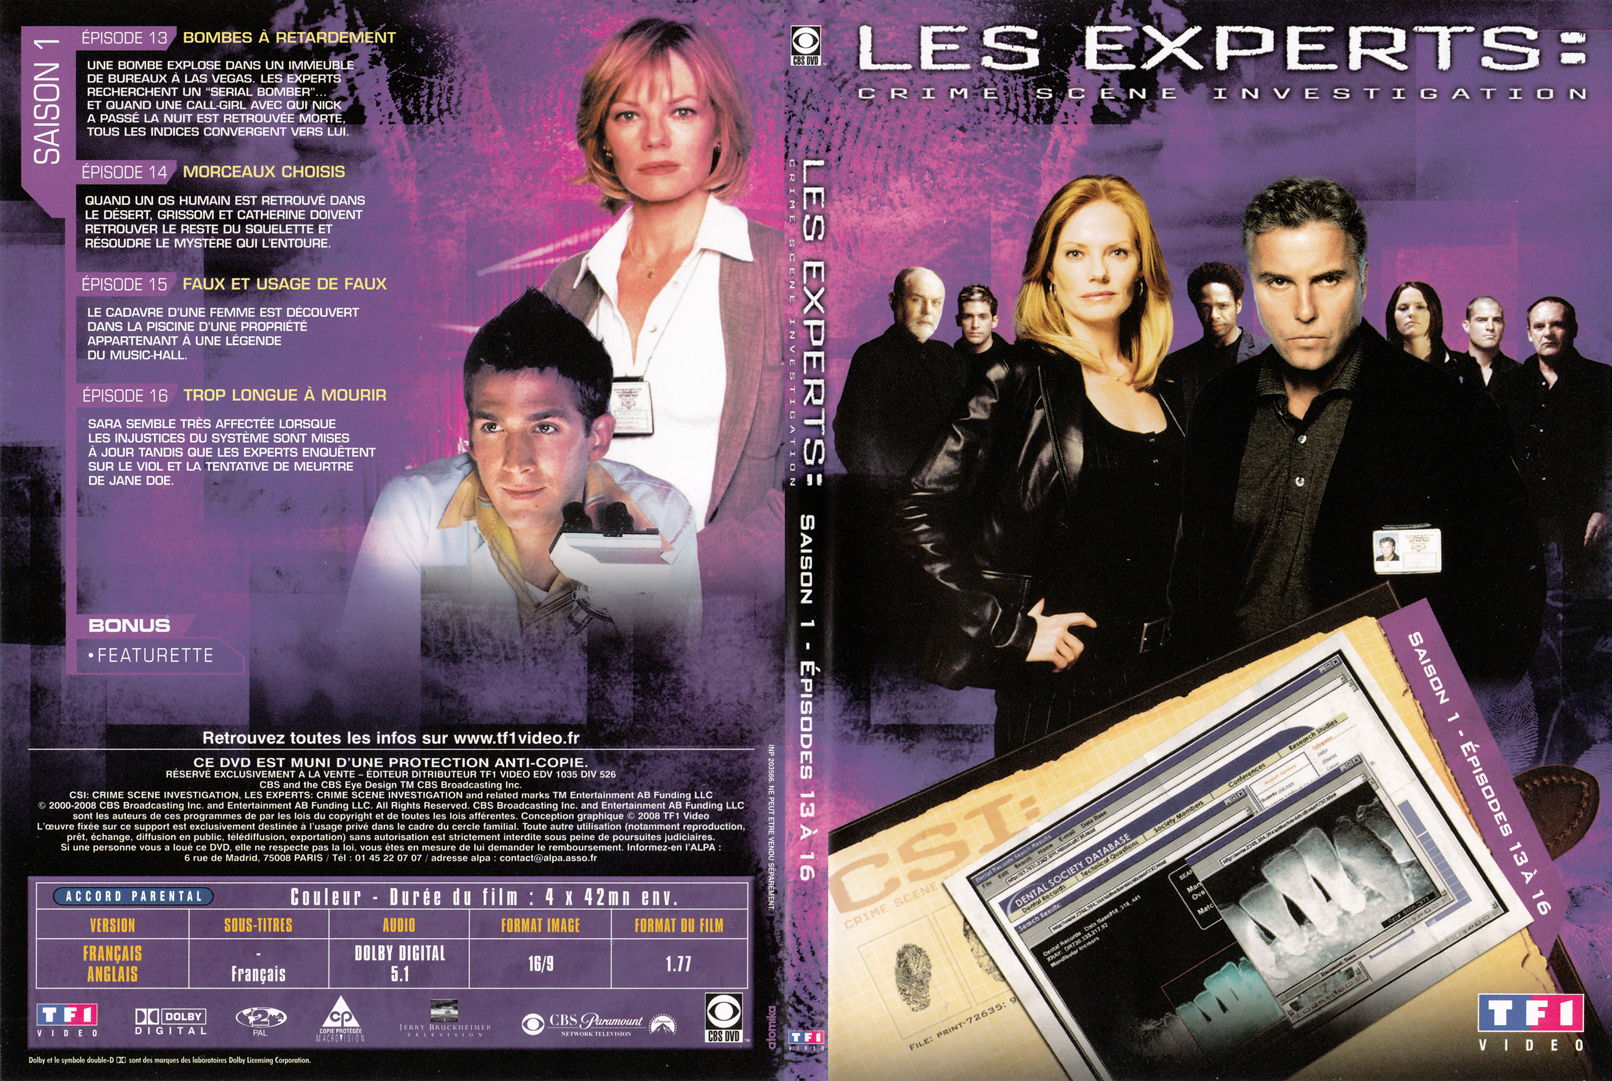 Jaquette DVD Les experts las vegas Saison 01 DVD 04 - SLIM